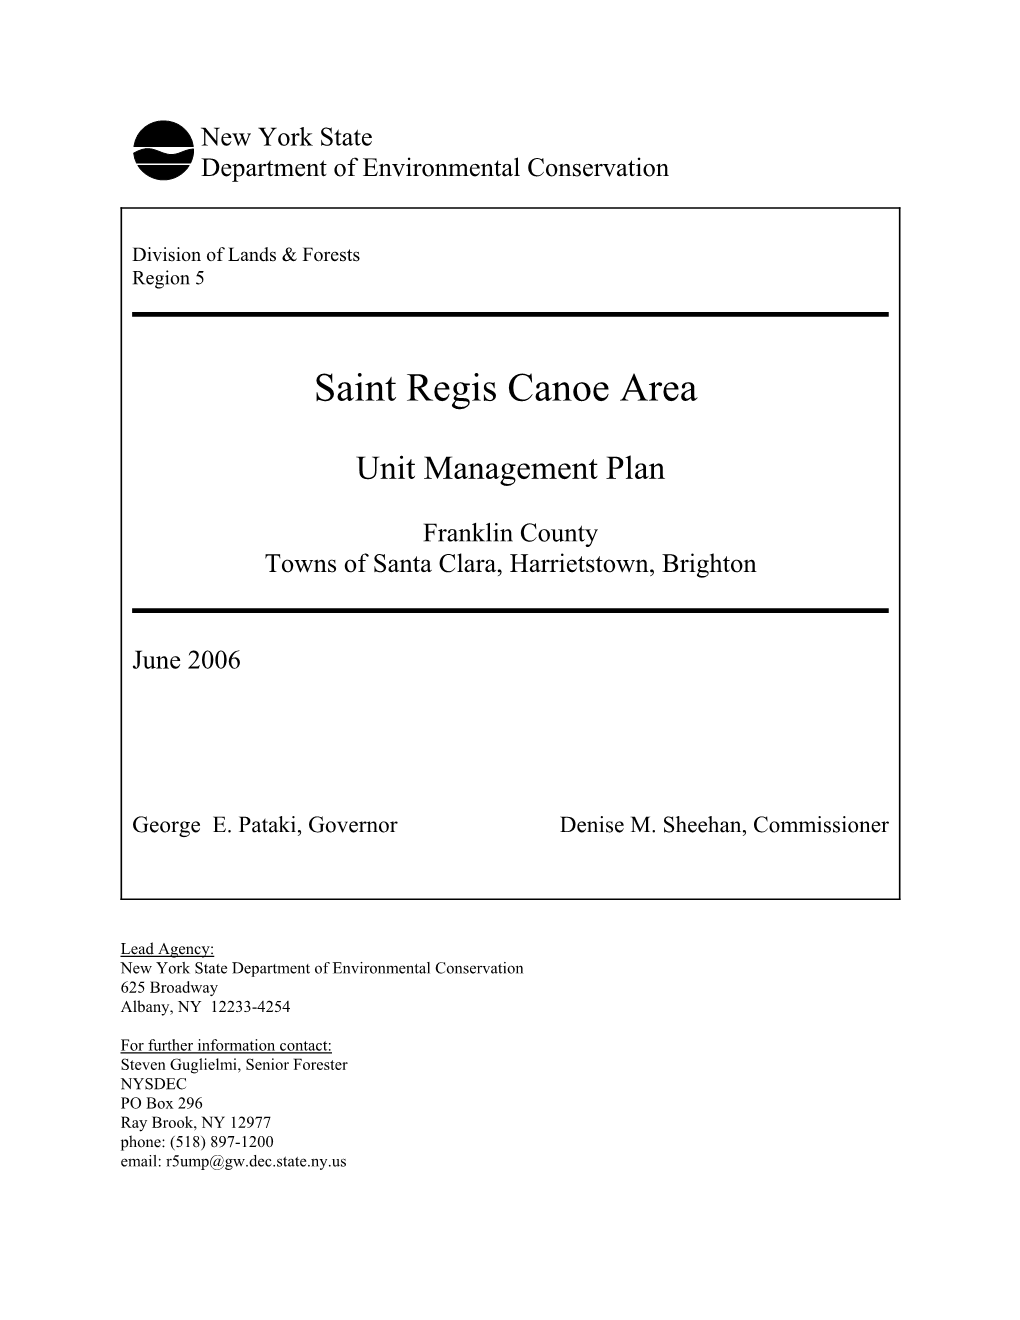 ST. REGIS CANOE AREA UNIT MANAGEMENT PLAN May 11, 2006